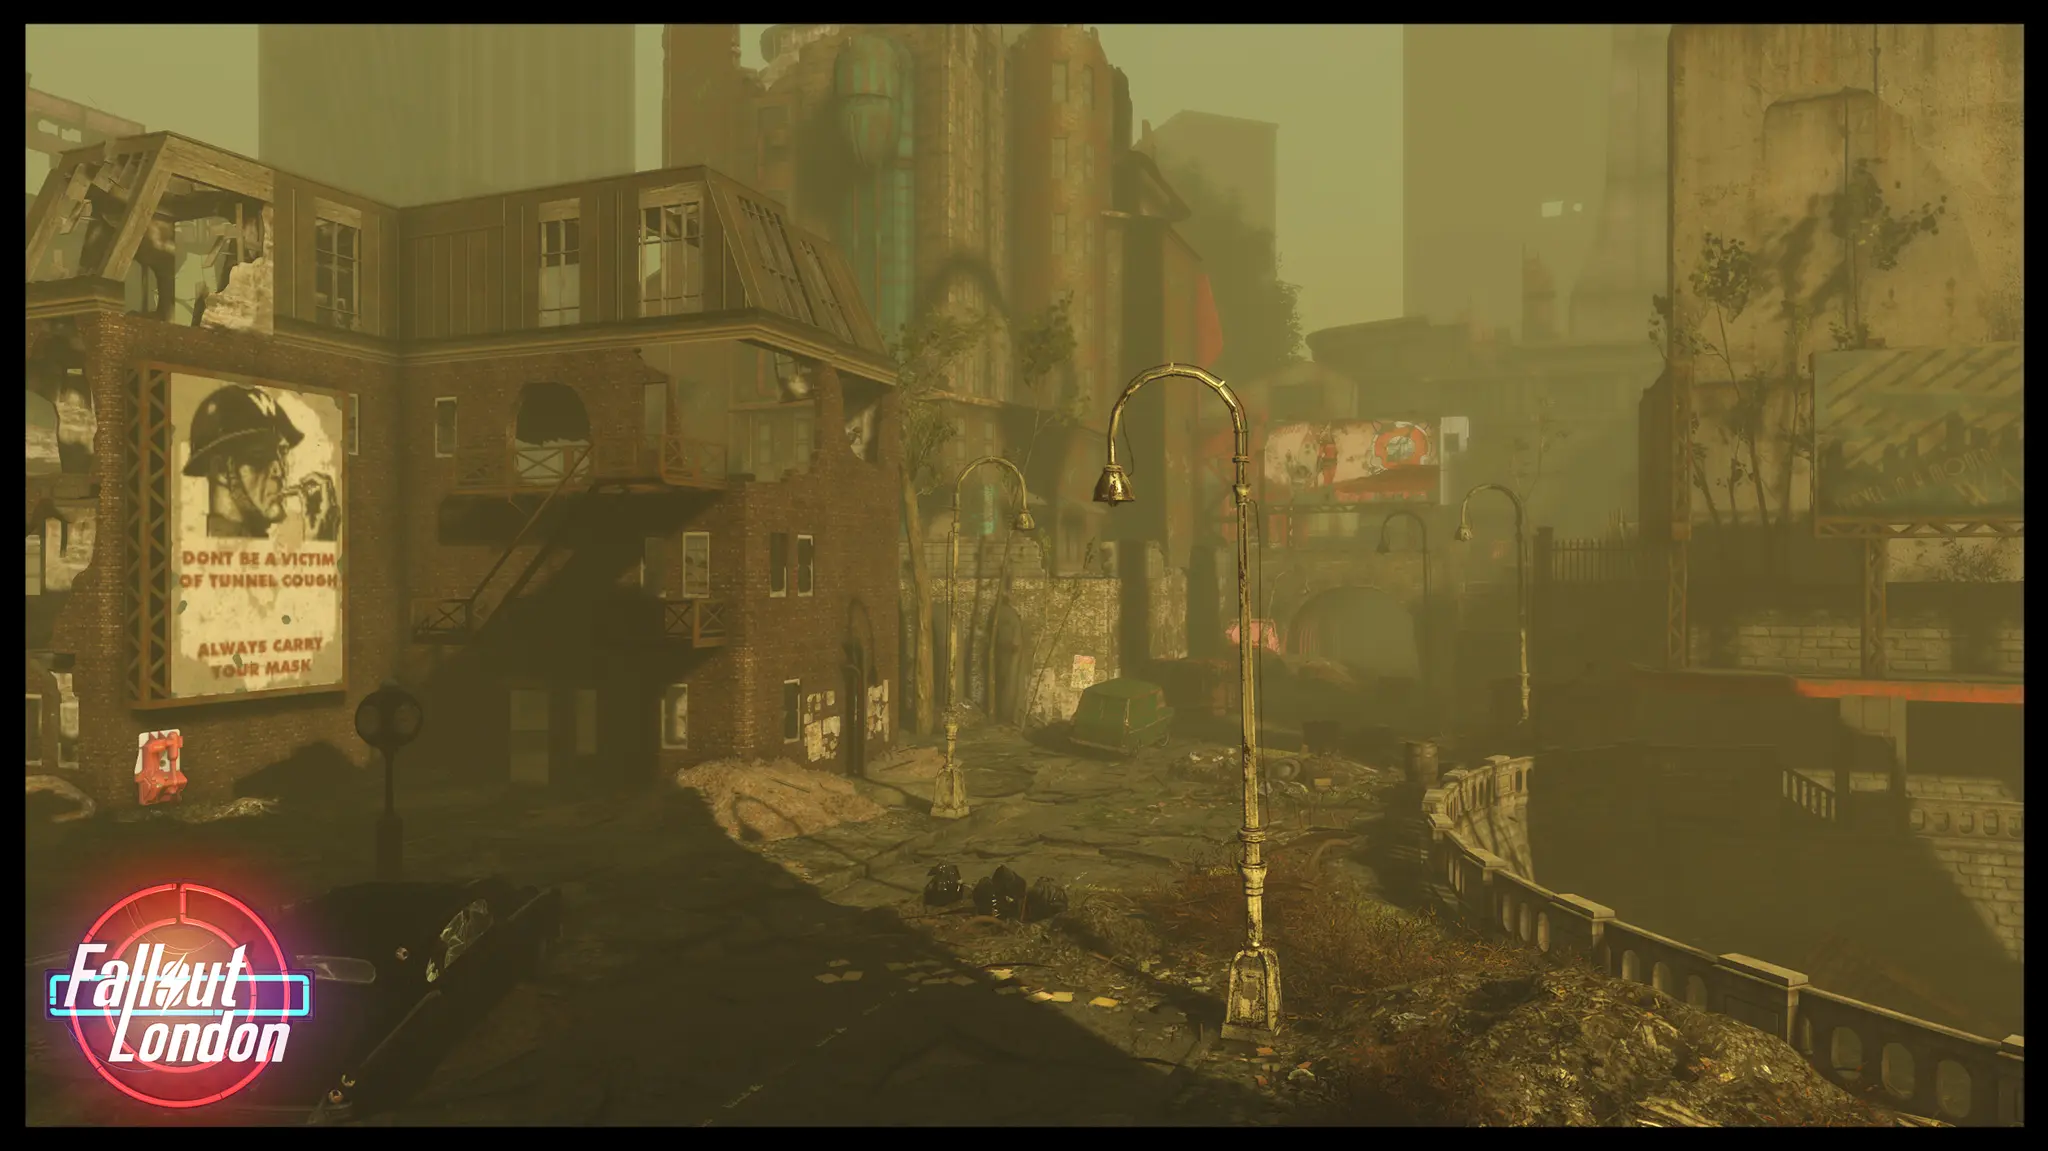 Fallout London Brick Lane